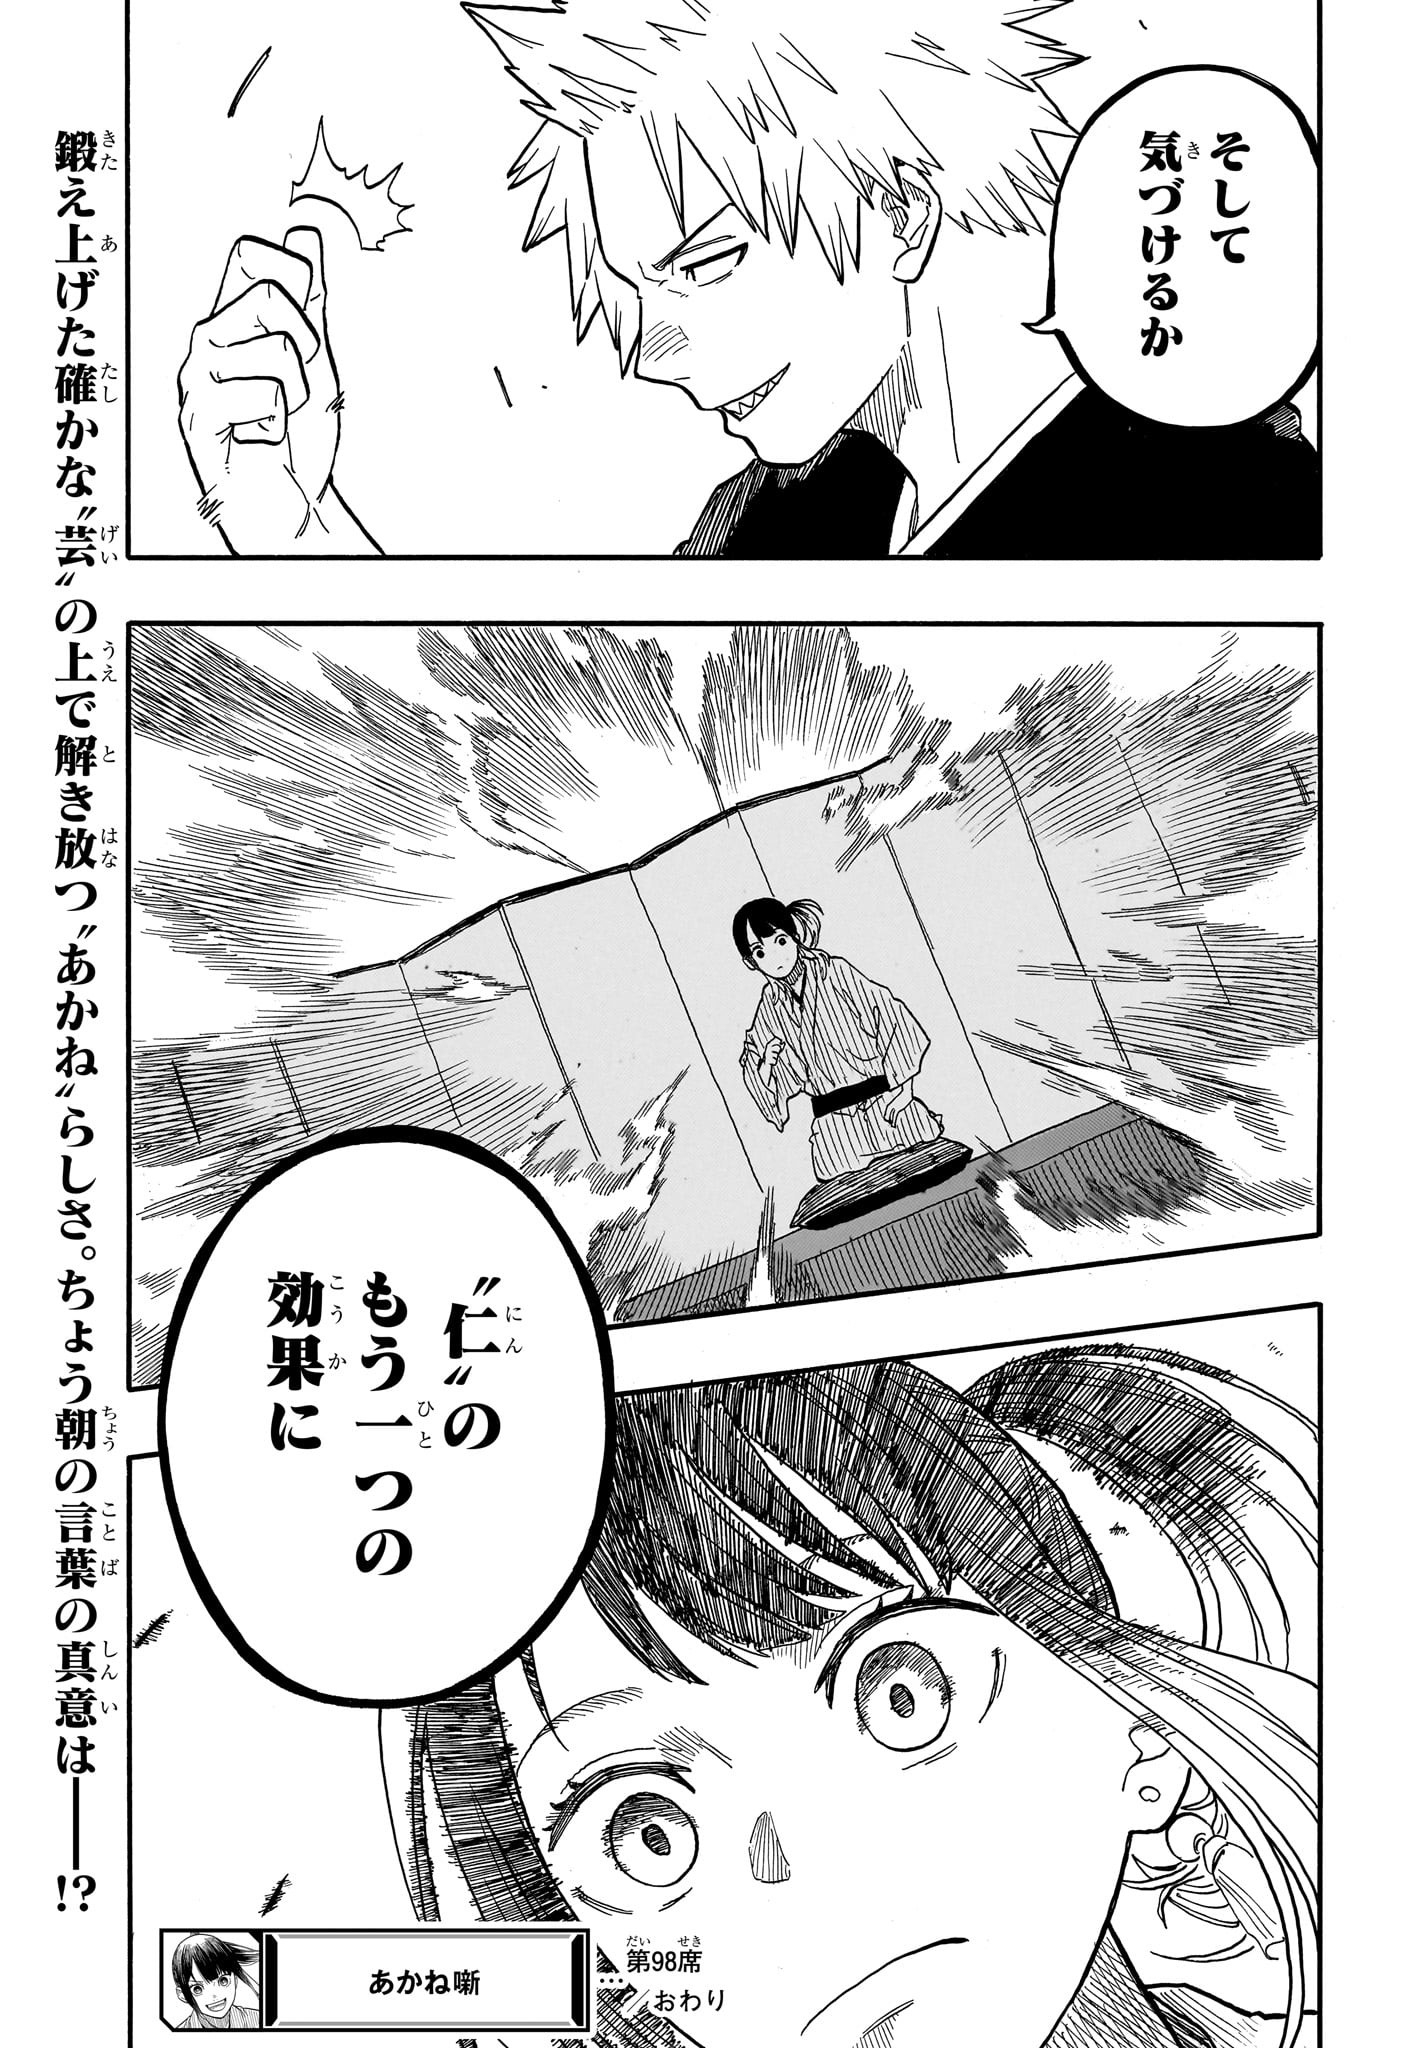 Akane-Banashi - Chapter 98 - Page 21